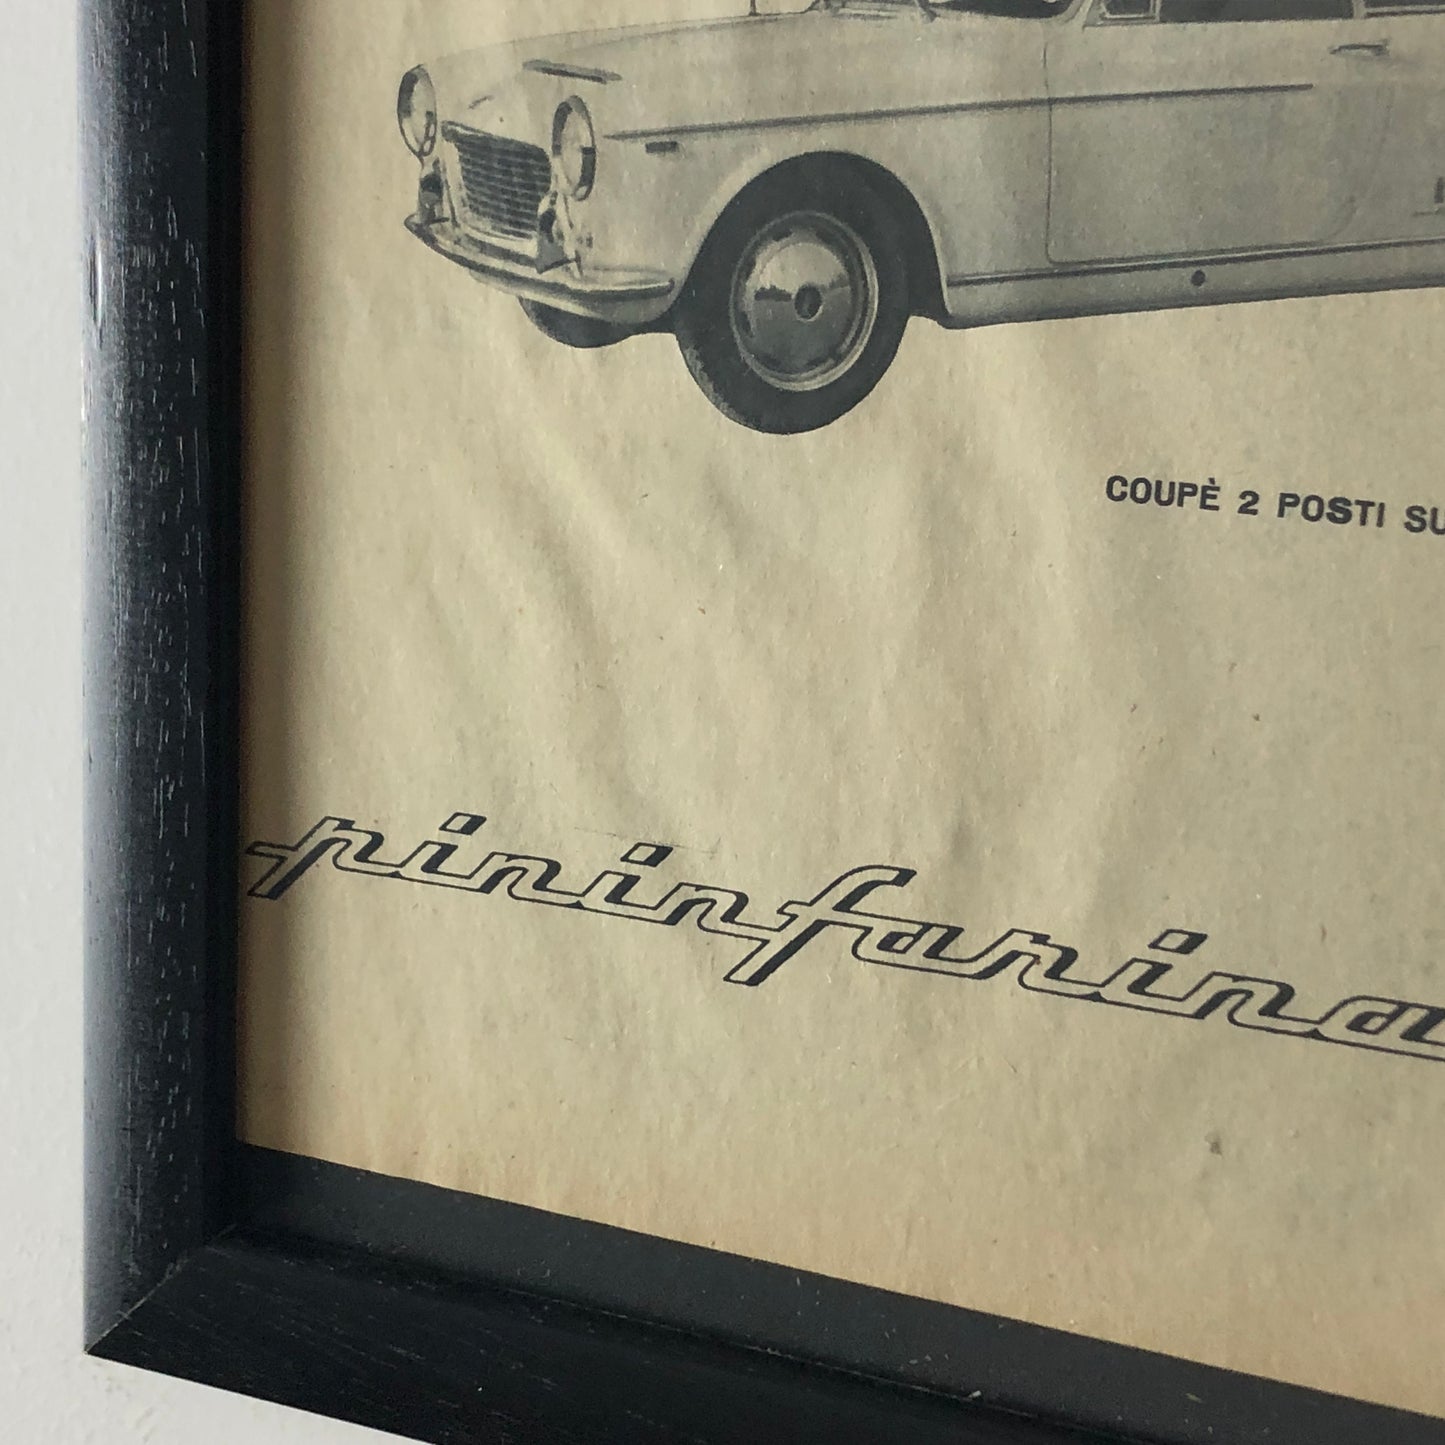 Pininfarina, Pubblicità Anno 1960 Coupé 2 Posti Pininfarina su Telaio Fiat 1500